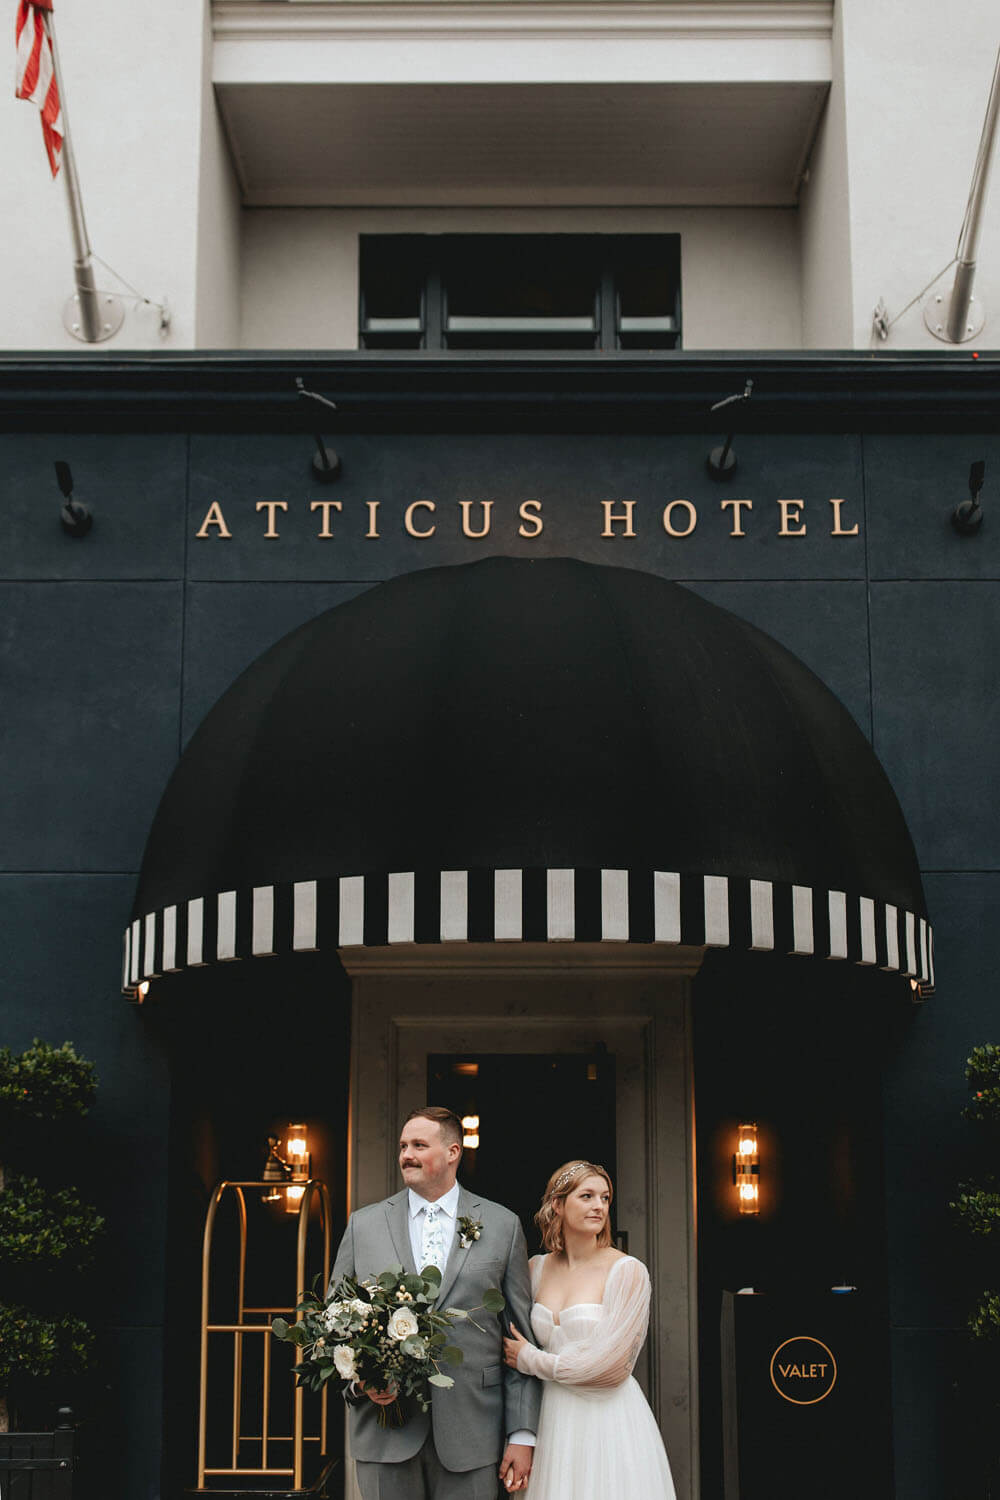 Atticus Hotel wedding portrait